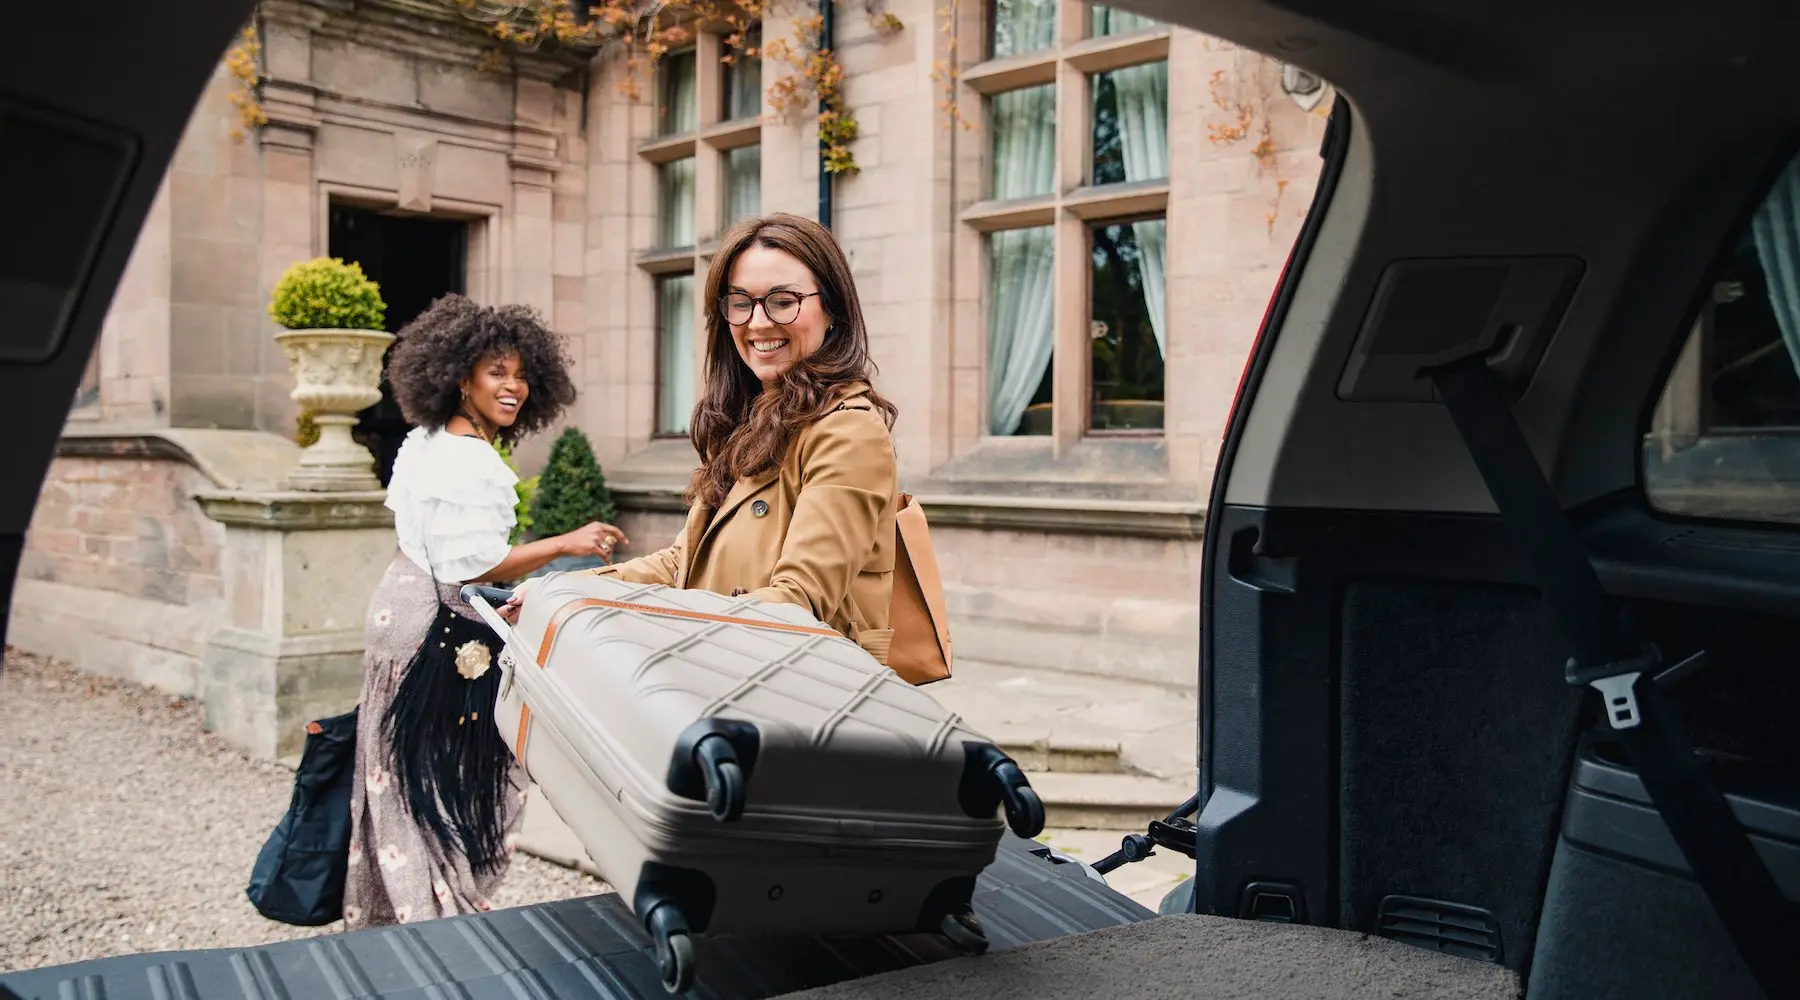 Duas mulheres puxando malas de um carro, com um belo prédio histórico atrás delas.